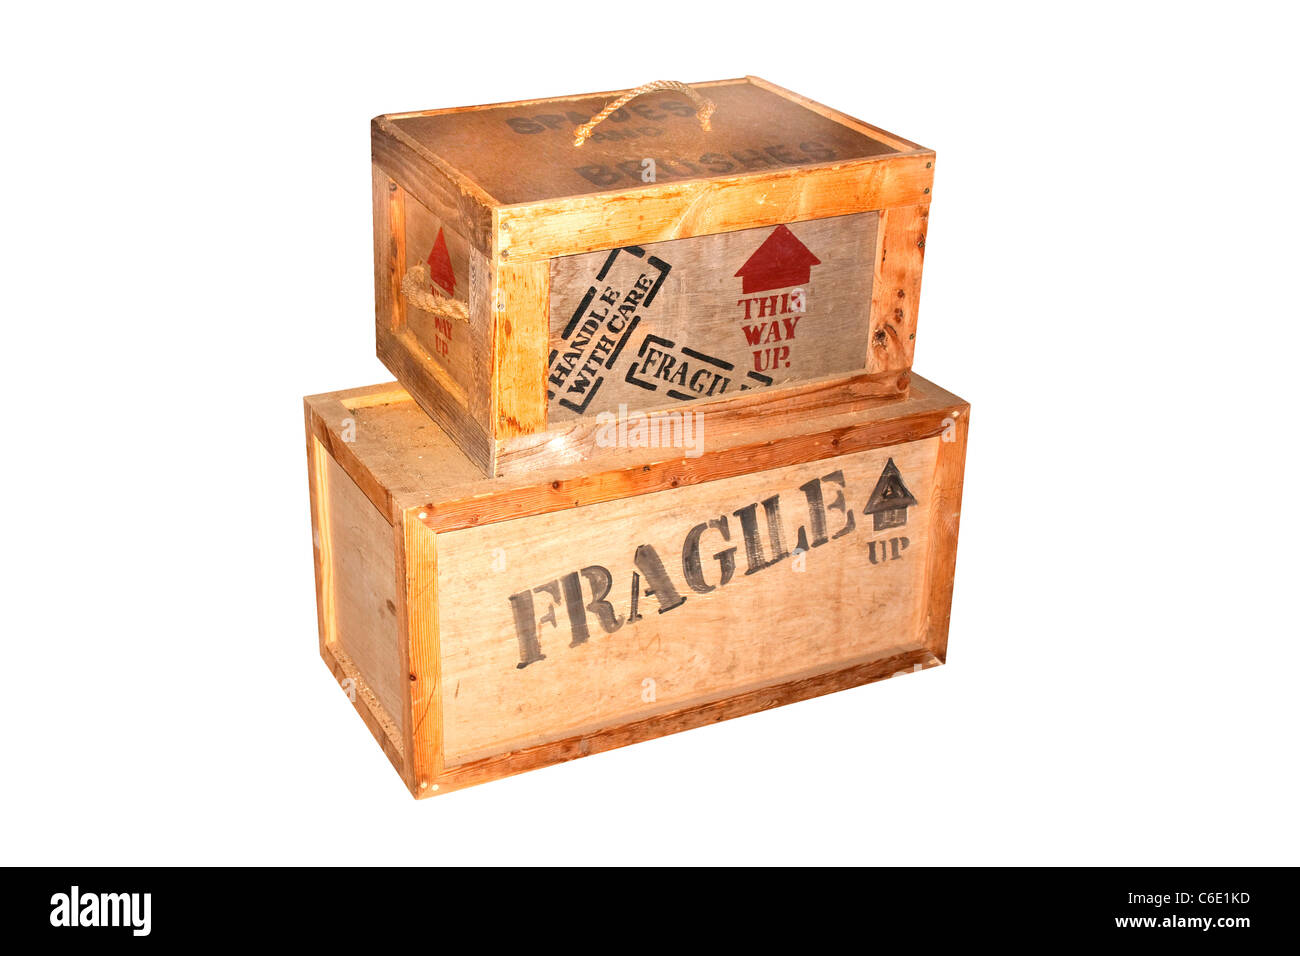 Casos de embalaje frágil de madera con letras sobre Foto de stock